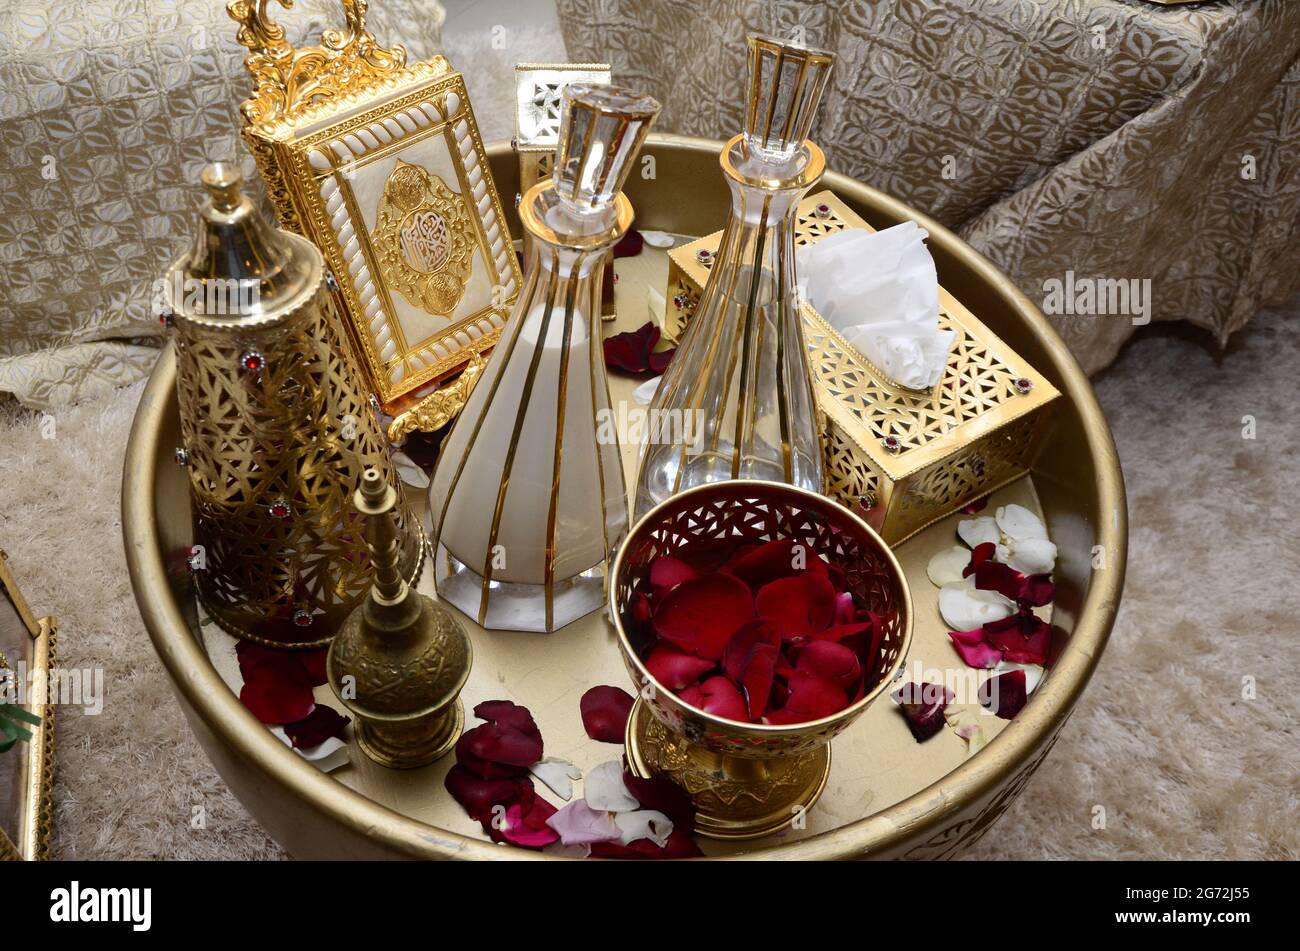 Tyafer marocain, récipients de cadeau traditionnels pour la cérémonie de  mariage, décoré de broderie dorée ornée.henné marocain .cadeaux de mariage  pour le b Photo Stock - Alamy